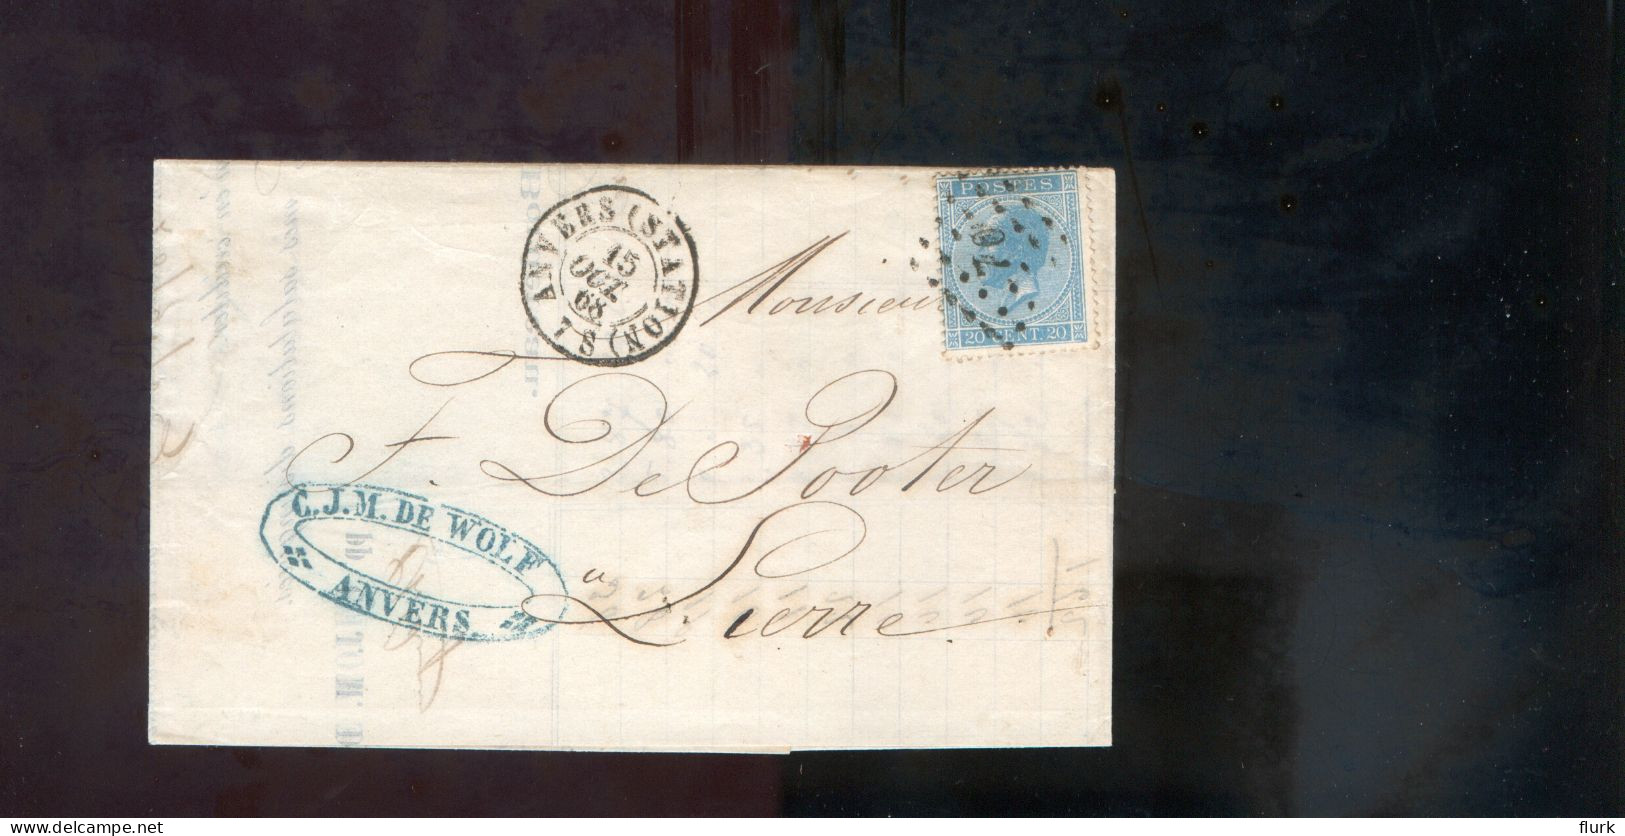 België OCB18 Gestempeld Op Brief Anvers-Lierre 1868 Perfect (2 Scans) - 1865-1866 Linksprofil